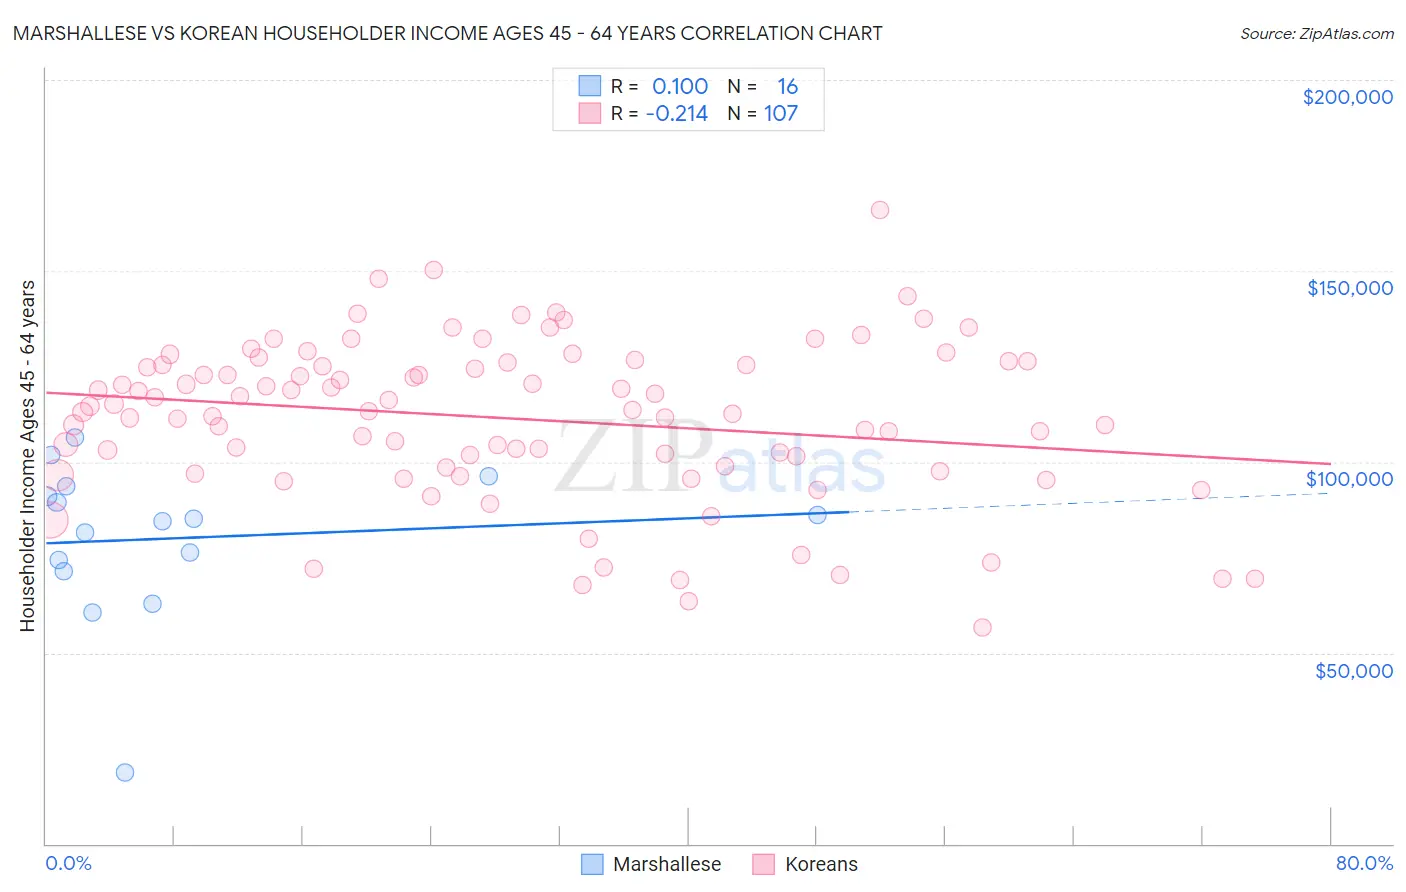 Marshallese vs Korean Householder Income Ages 45 - 64 years